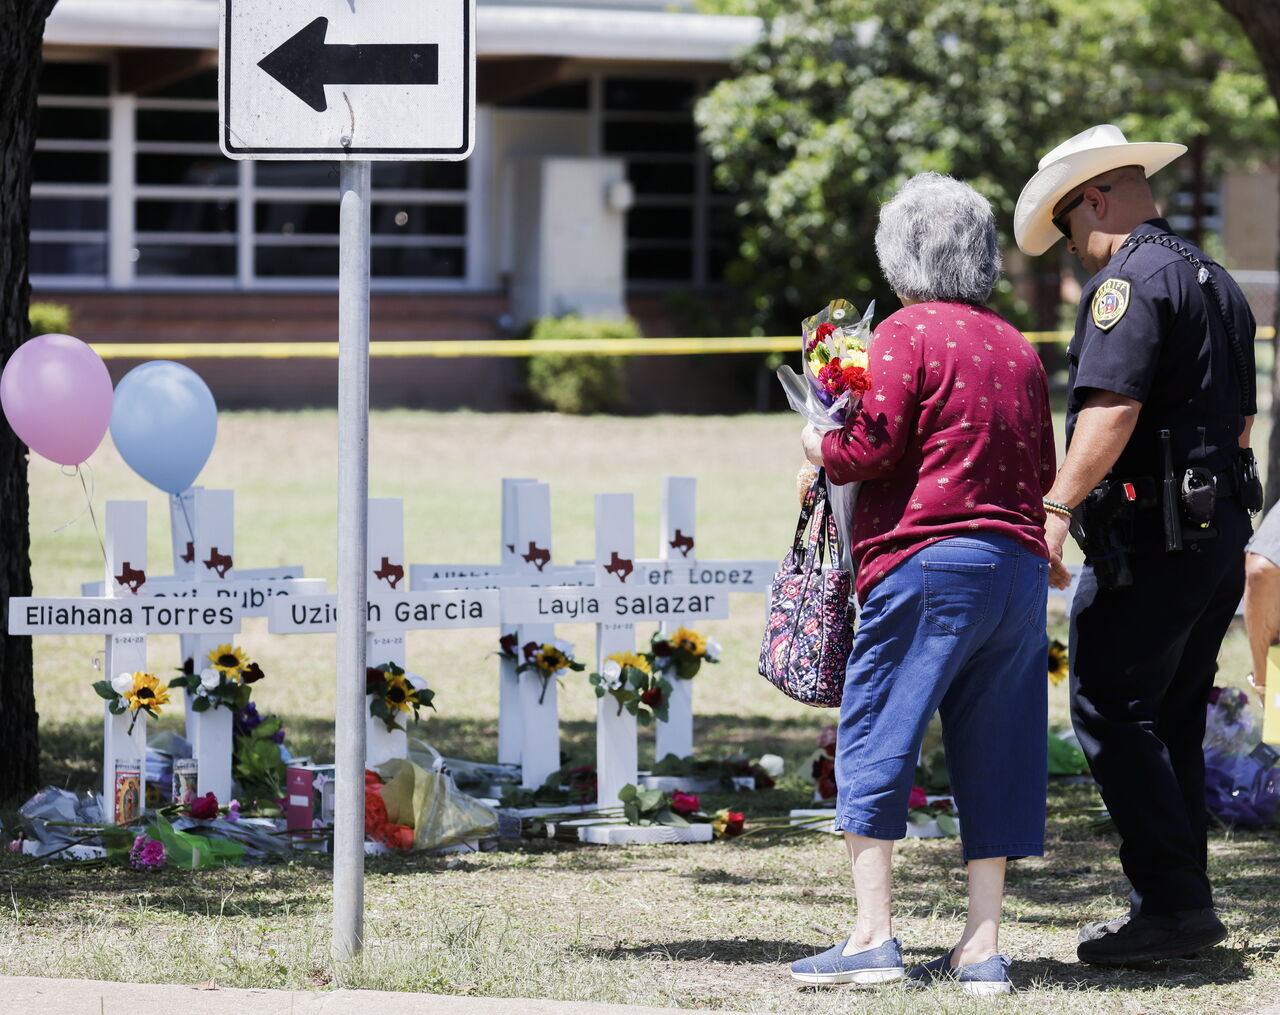 Las 21 víctimas mortales del tiroteo se encontraban en la misma aula, pero cuando la Policía finalmente logró acceder, también halló en ella a niños con vida. (ARCHIVO)